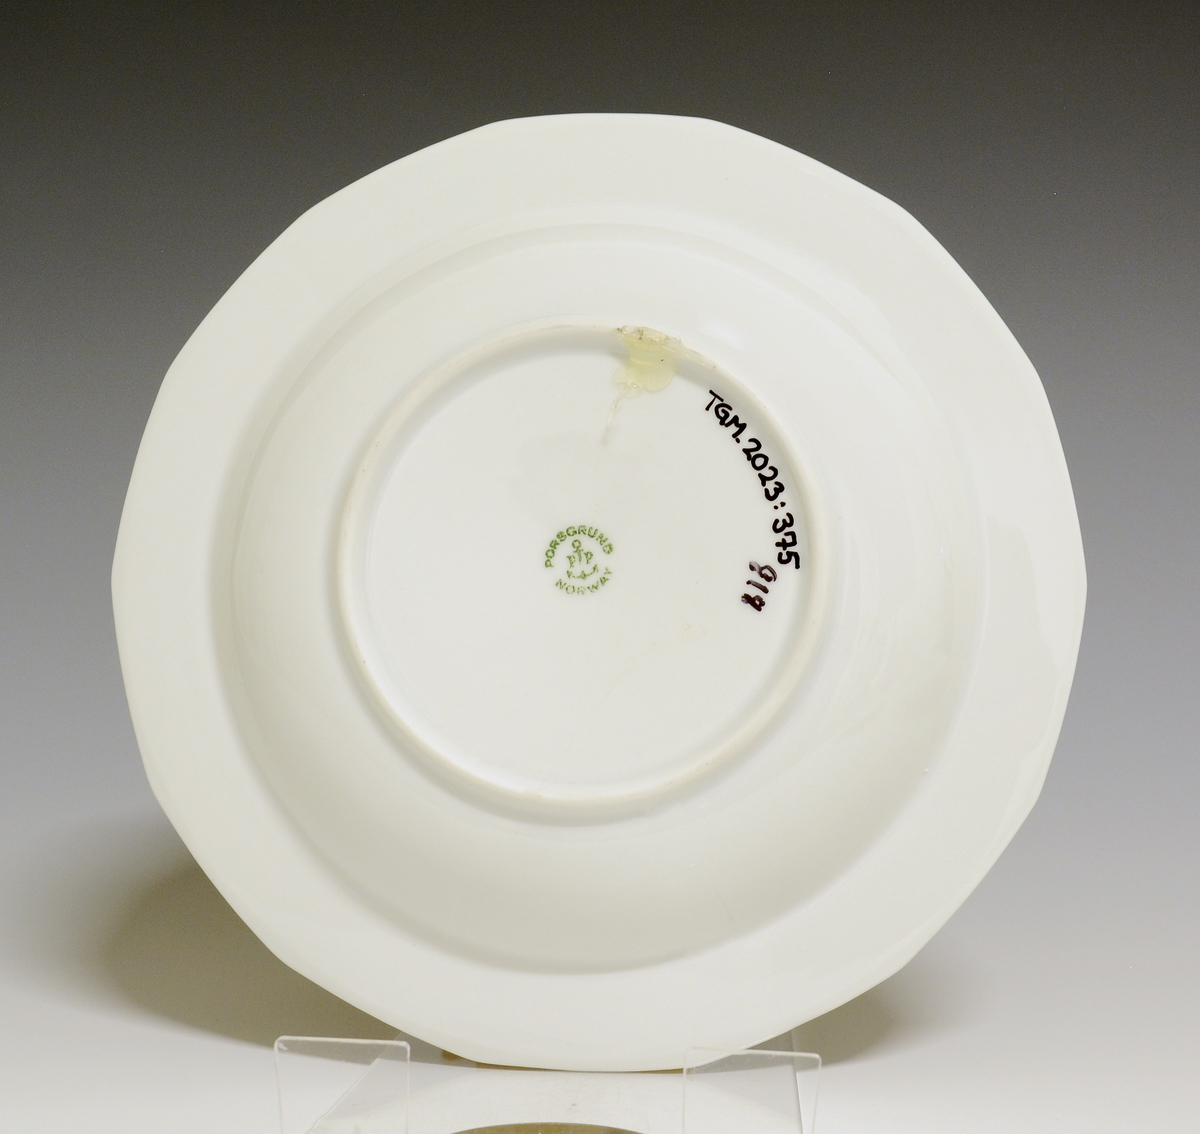 Mangekantet dyp tallerken av porselen med hvit glasur. 
Modell: Octavia, tegnet av Grete Rønning i 1977.
